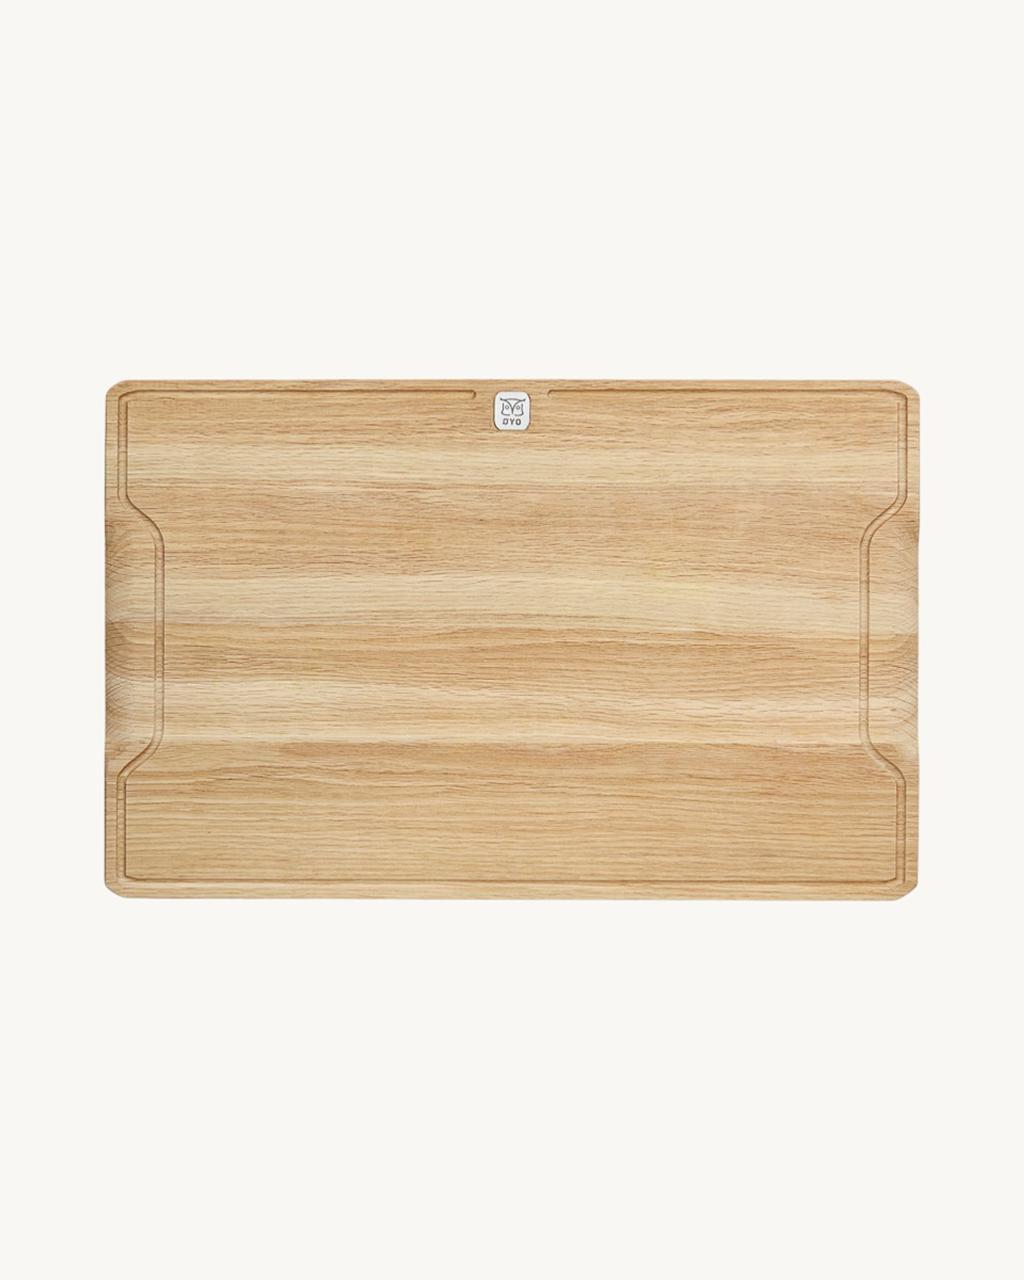 Gormetfjøla, oak board